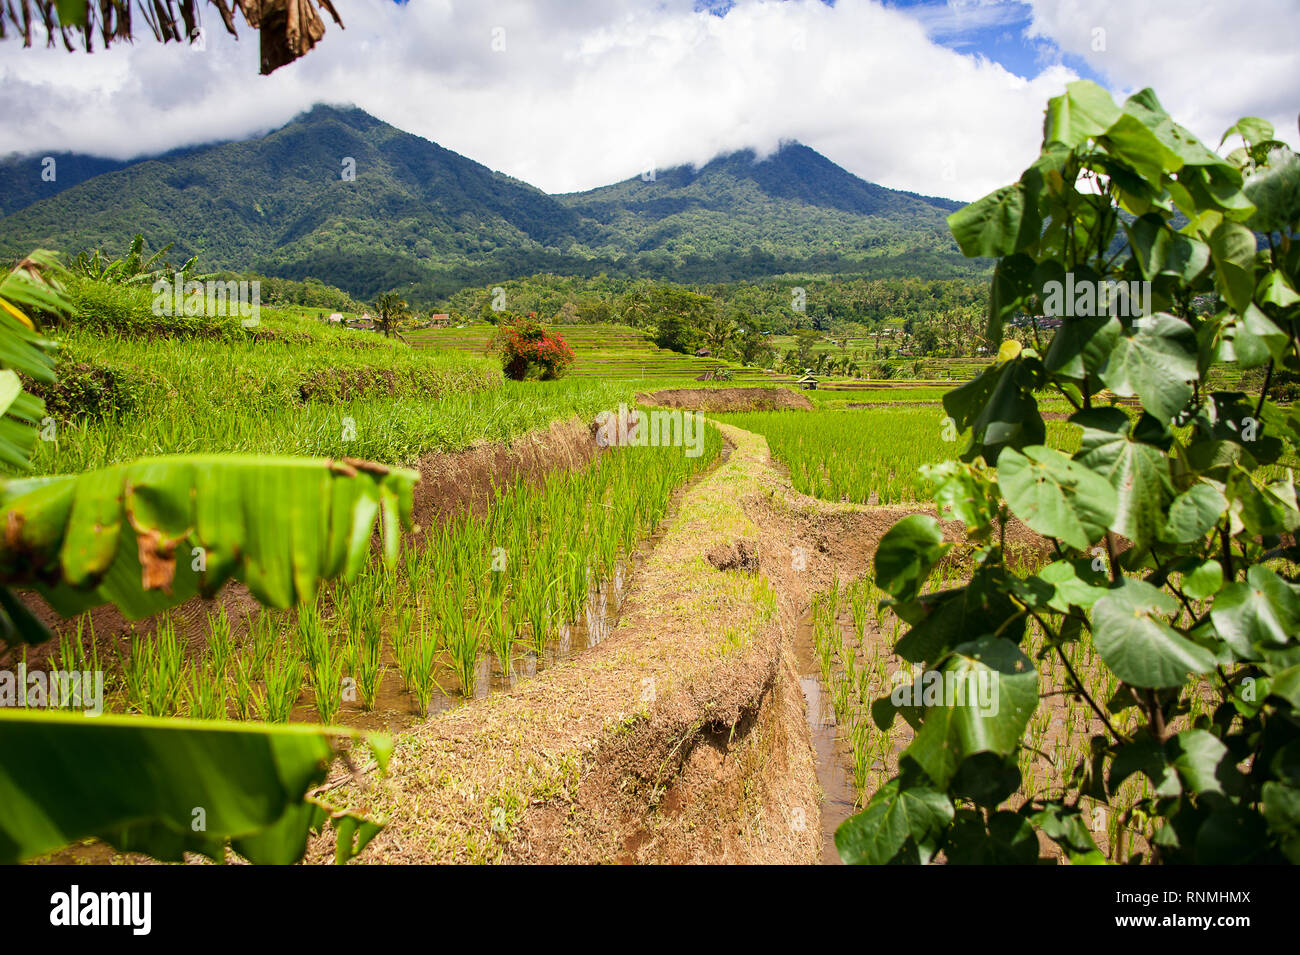 Jatiluwih terrazas de arroz, Bali, Indonesia. Hermoso paisaje de montaña, arrozales verdes frescos con vistas a la cordillera Batukaru detrás Foto de stock